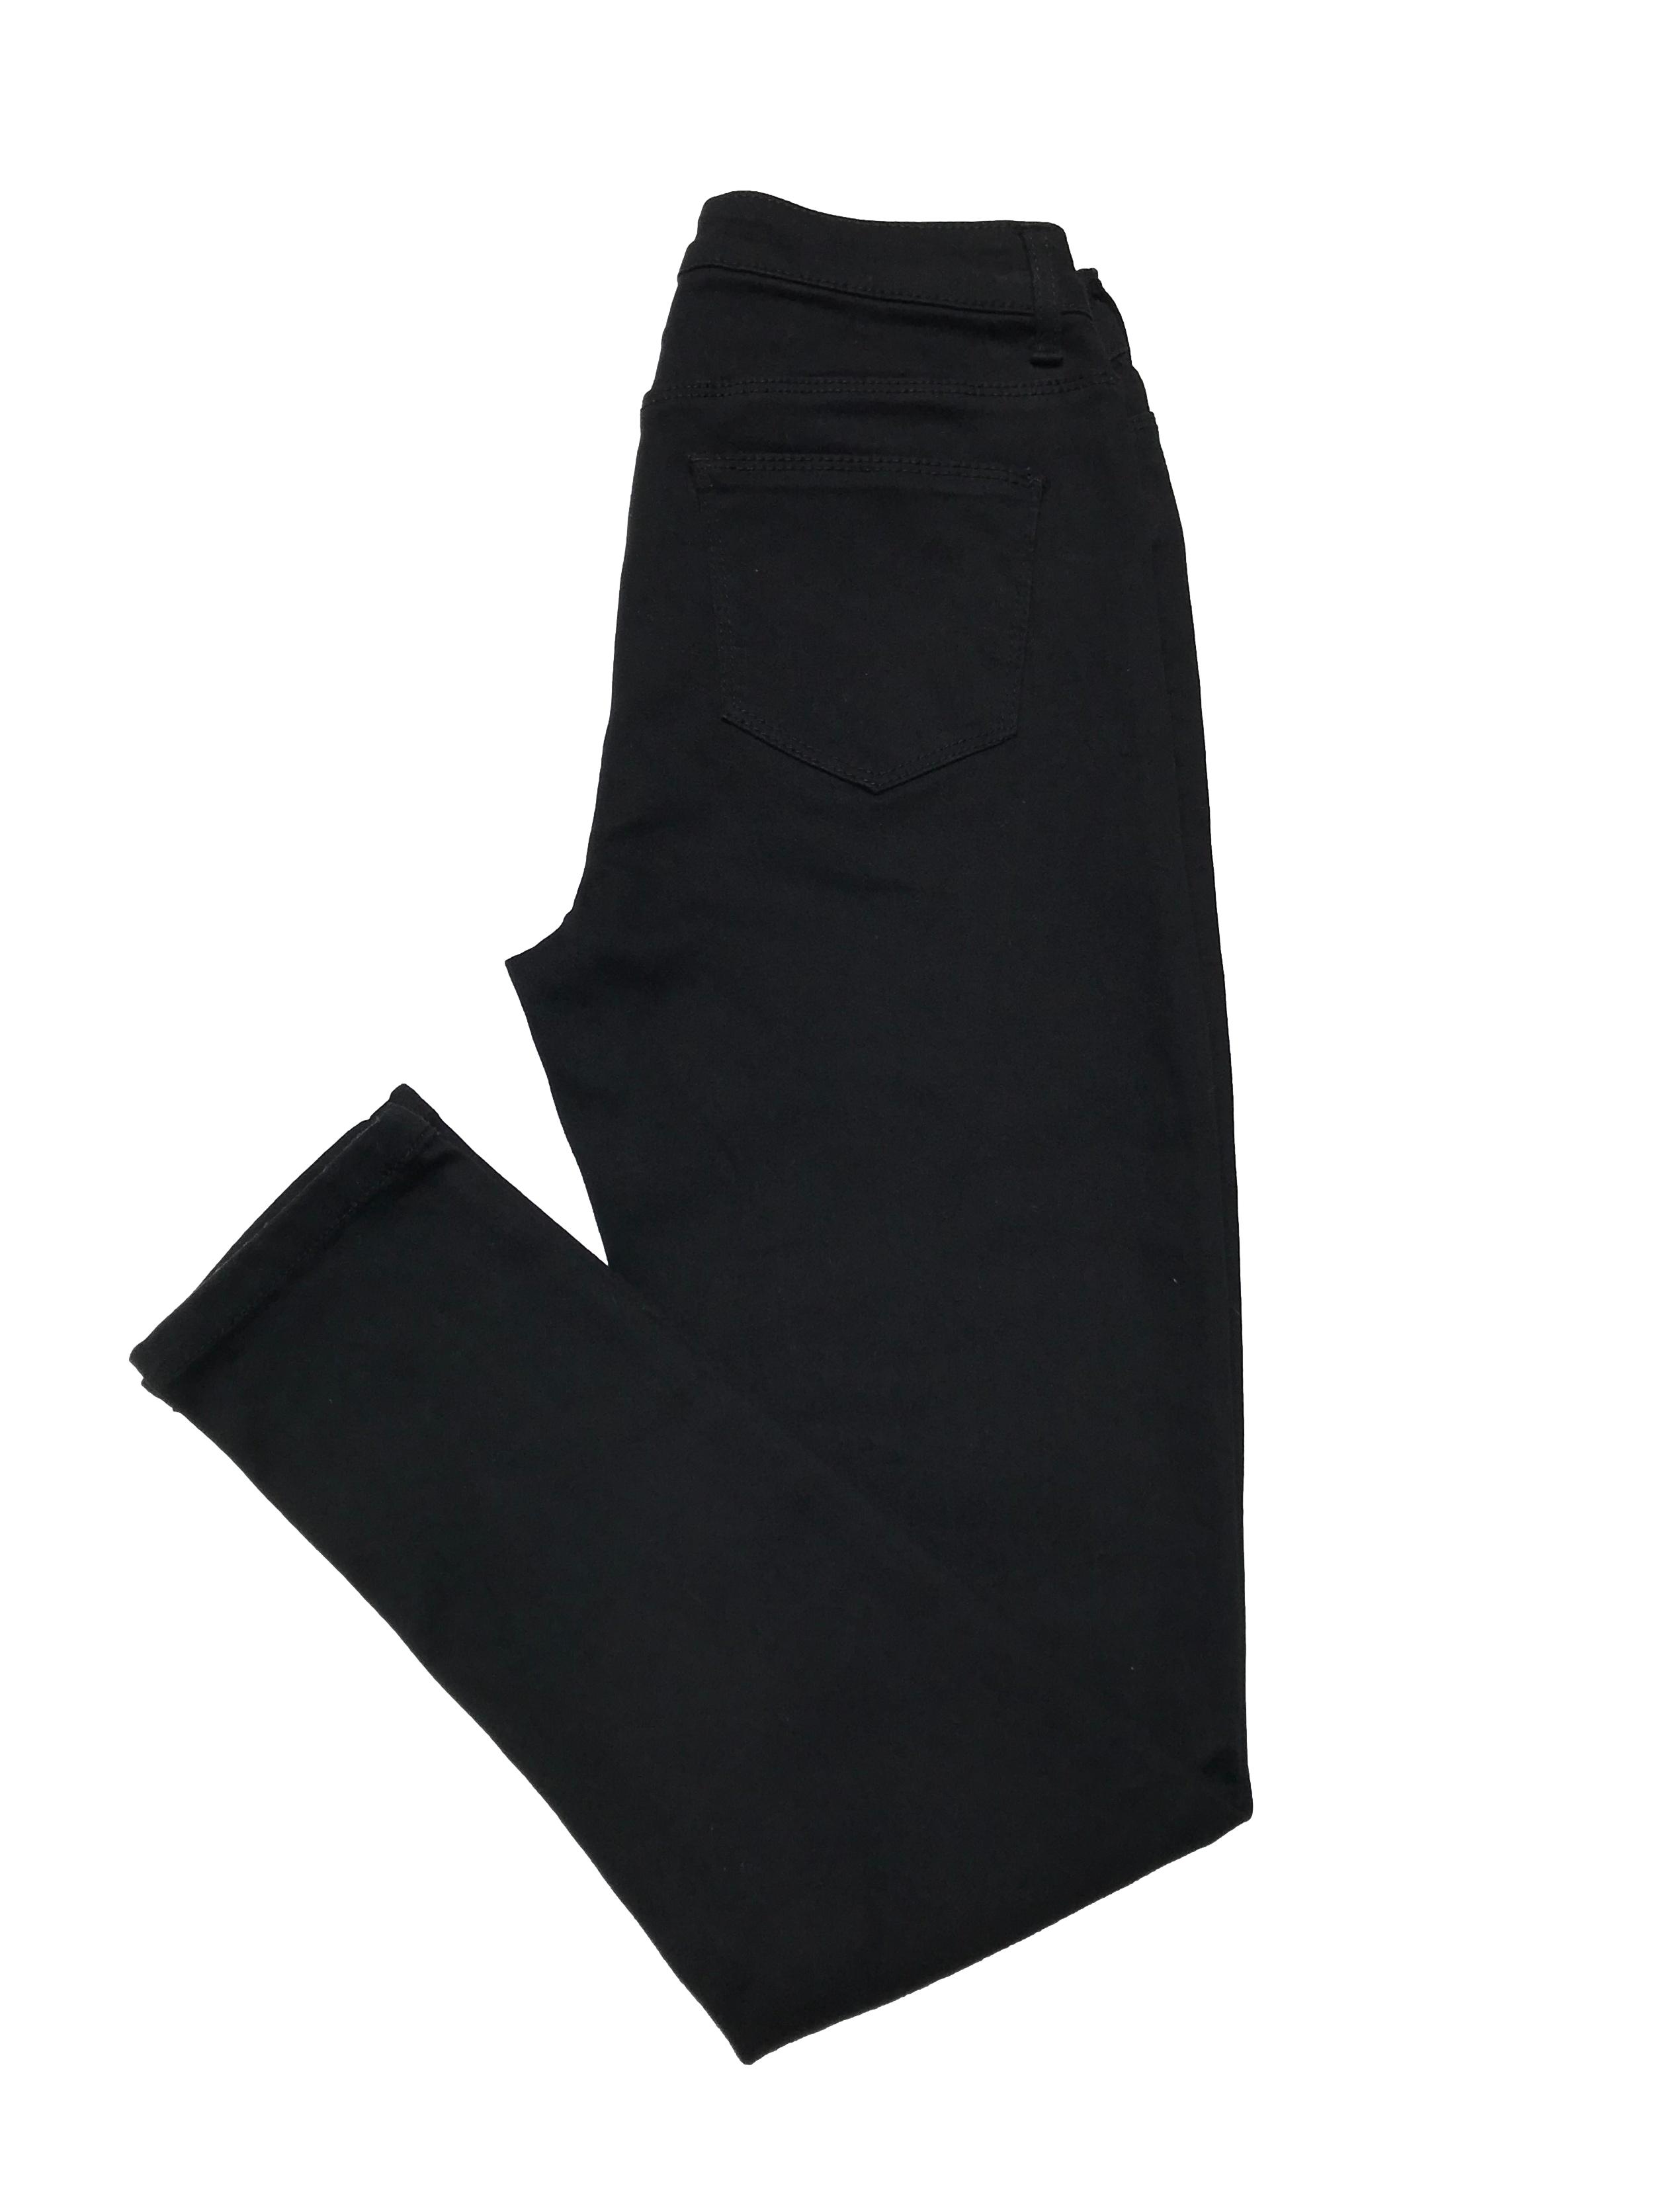 Pantalón pitillo negro stretch, con bolsillos posteriores y cierre delantero. Cintura 70cm sin estirar Largo 92cm